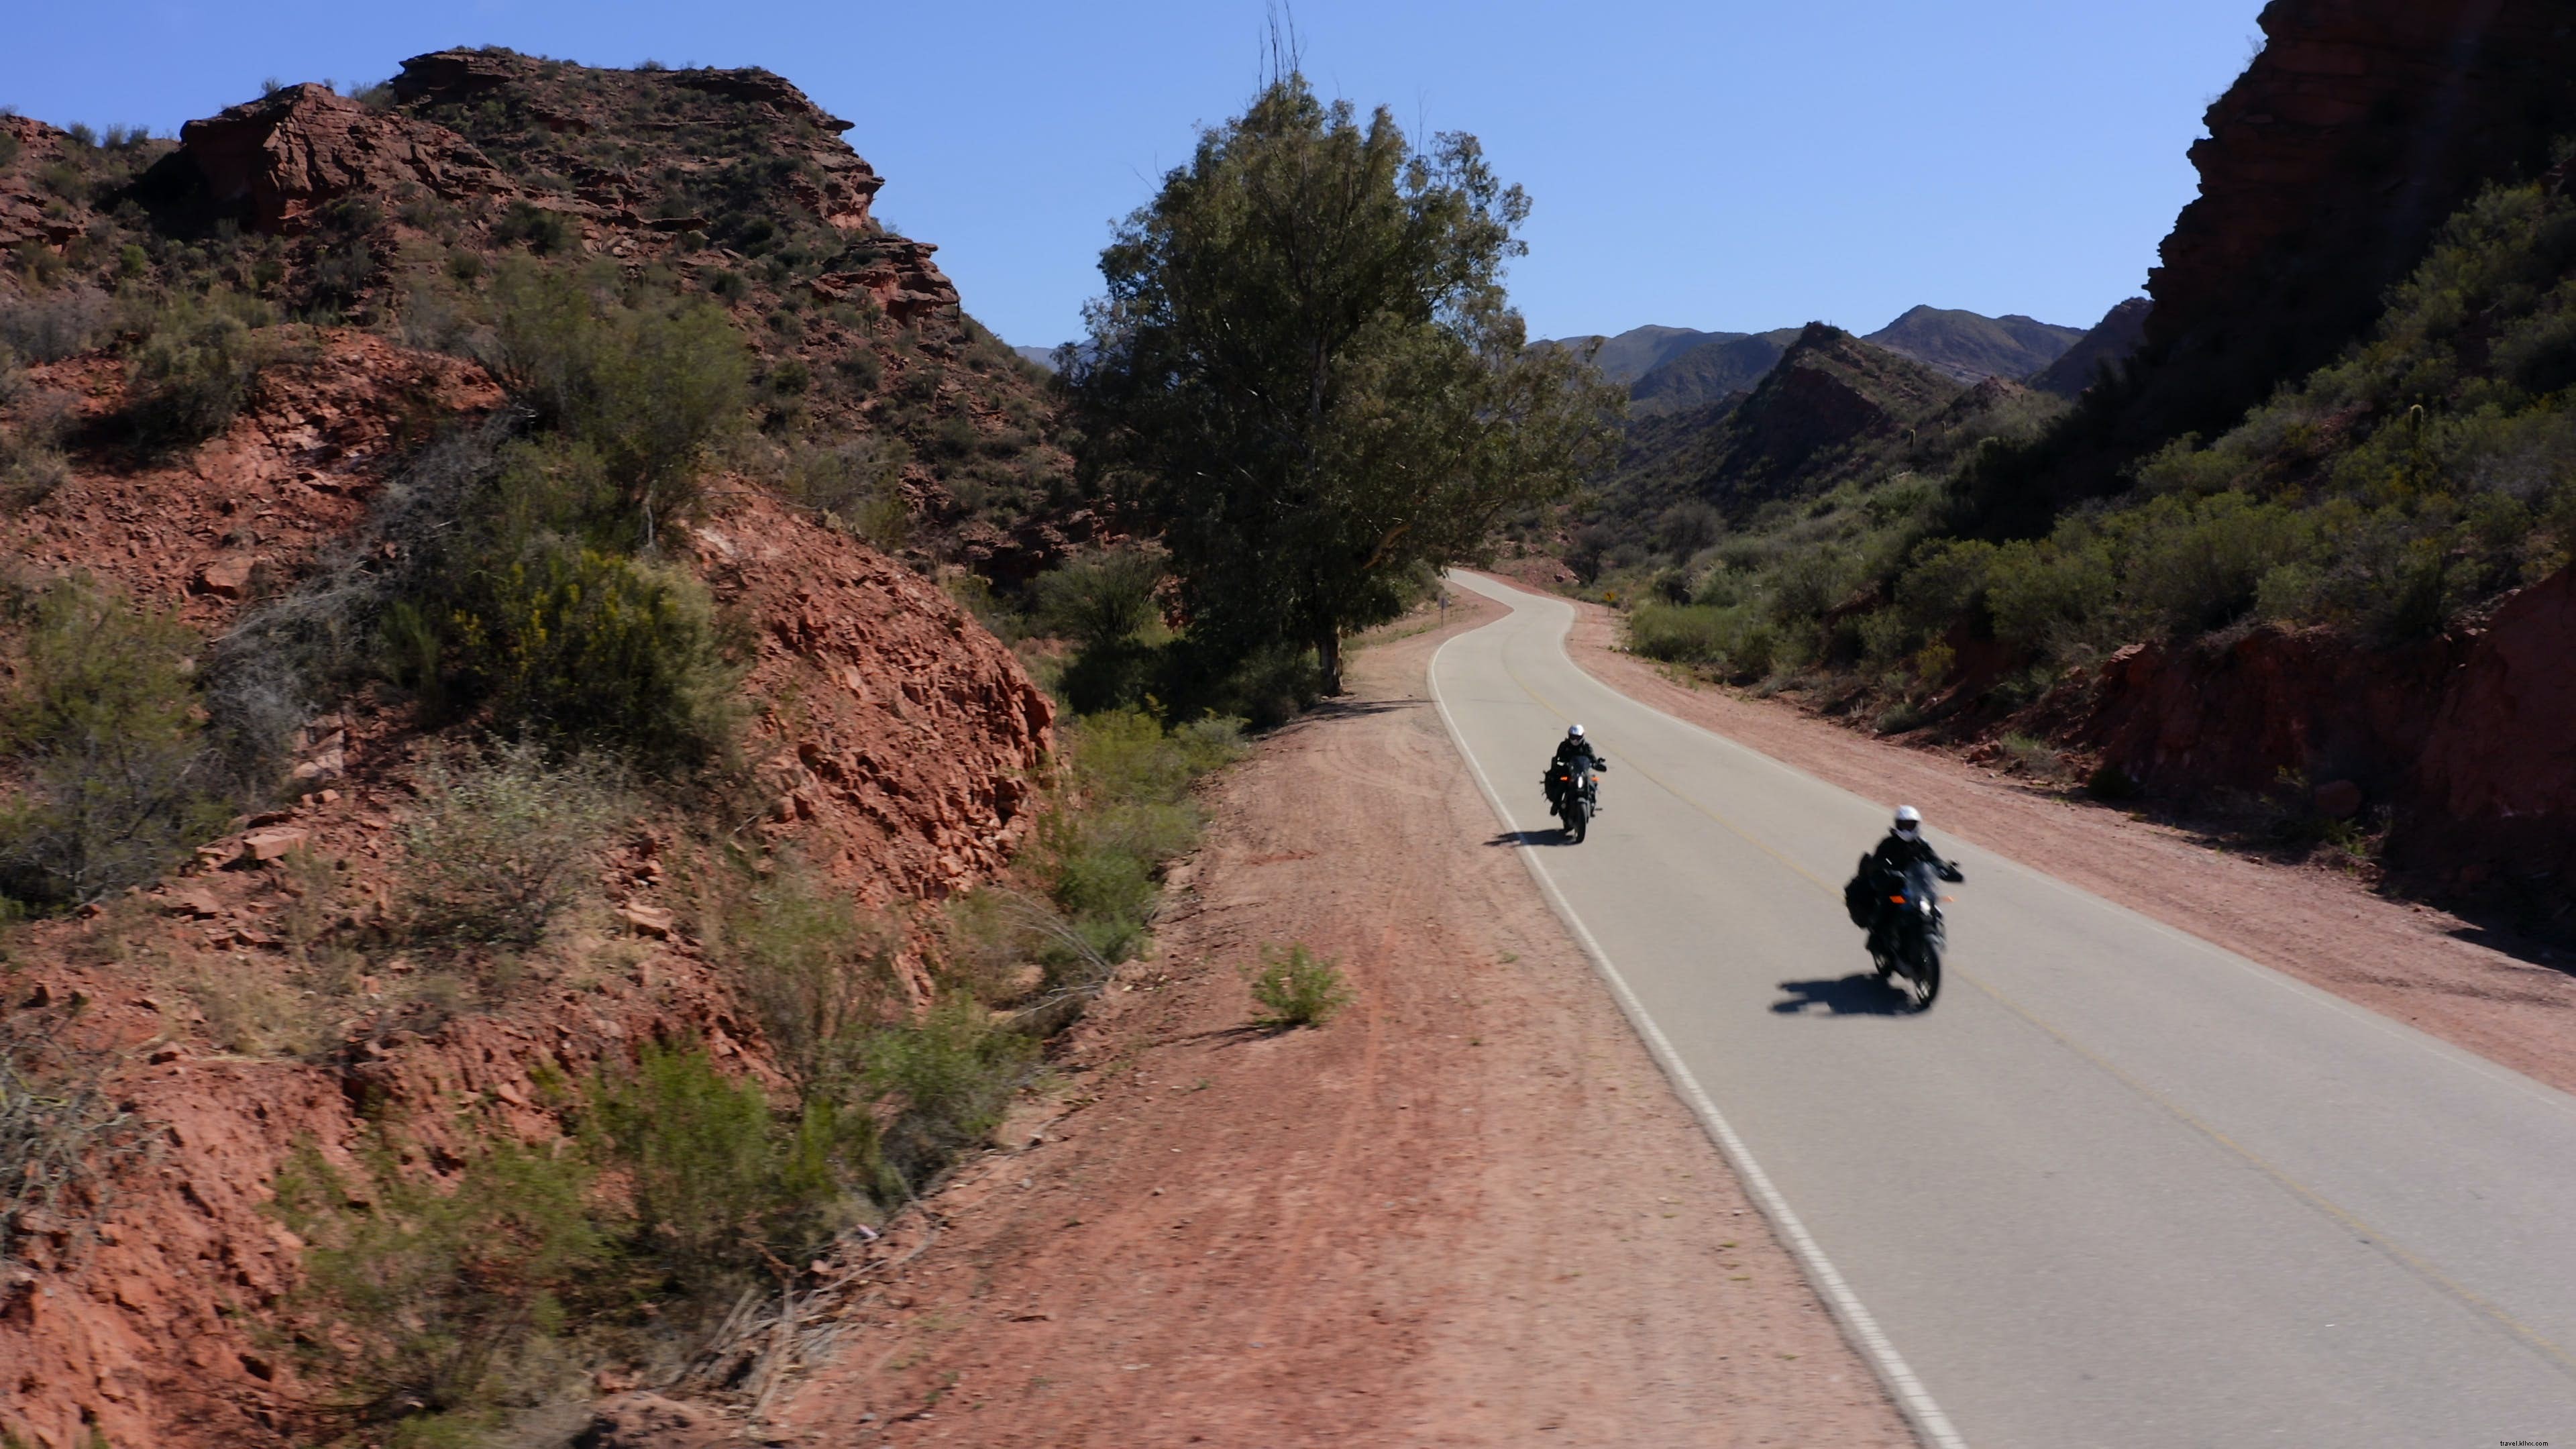 ユアン・マクレガーとチャーリー・ブアマンが別の壮大なバイクの冒険に出かけます 